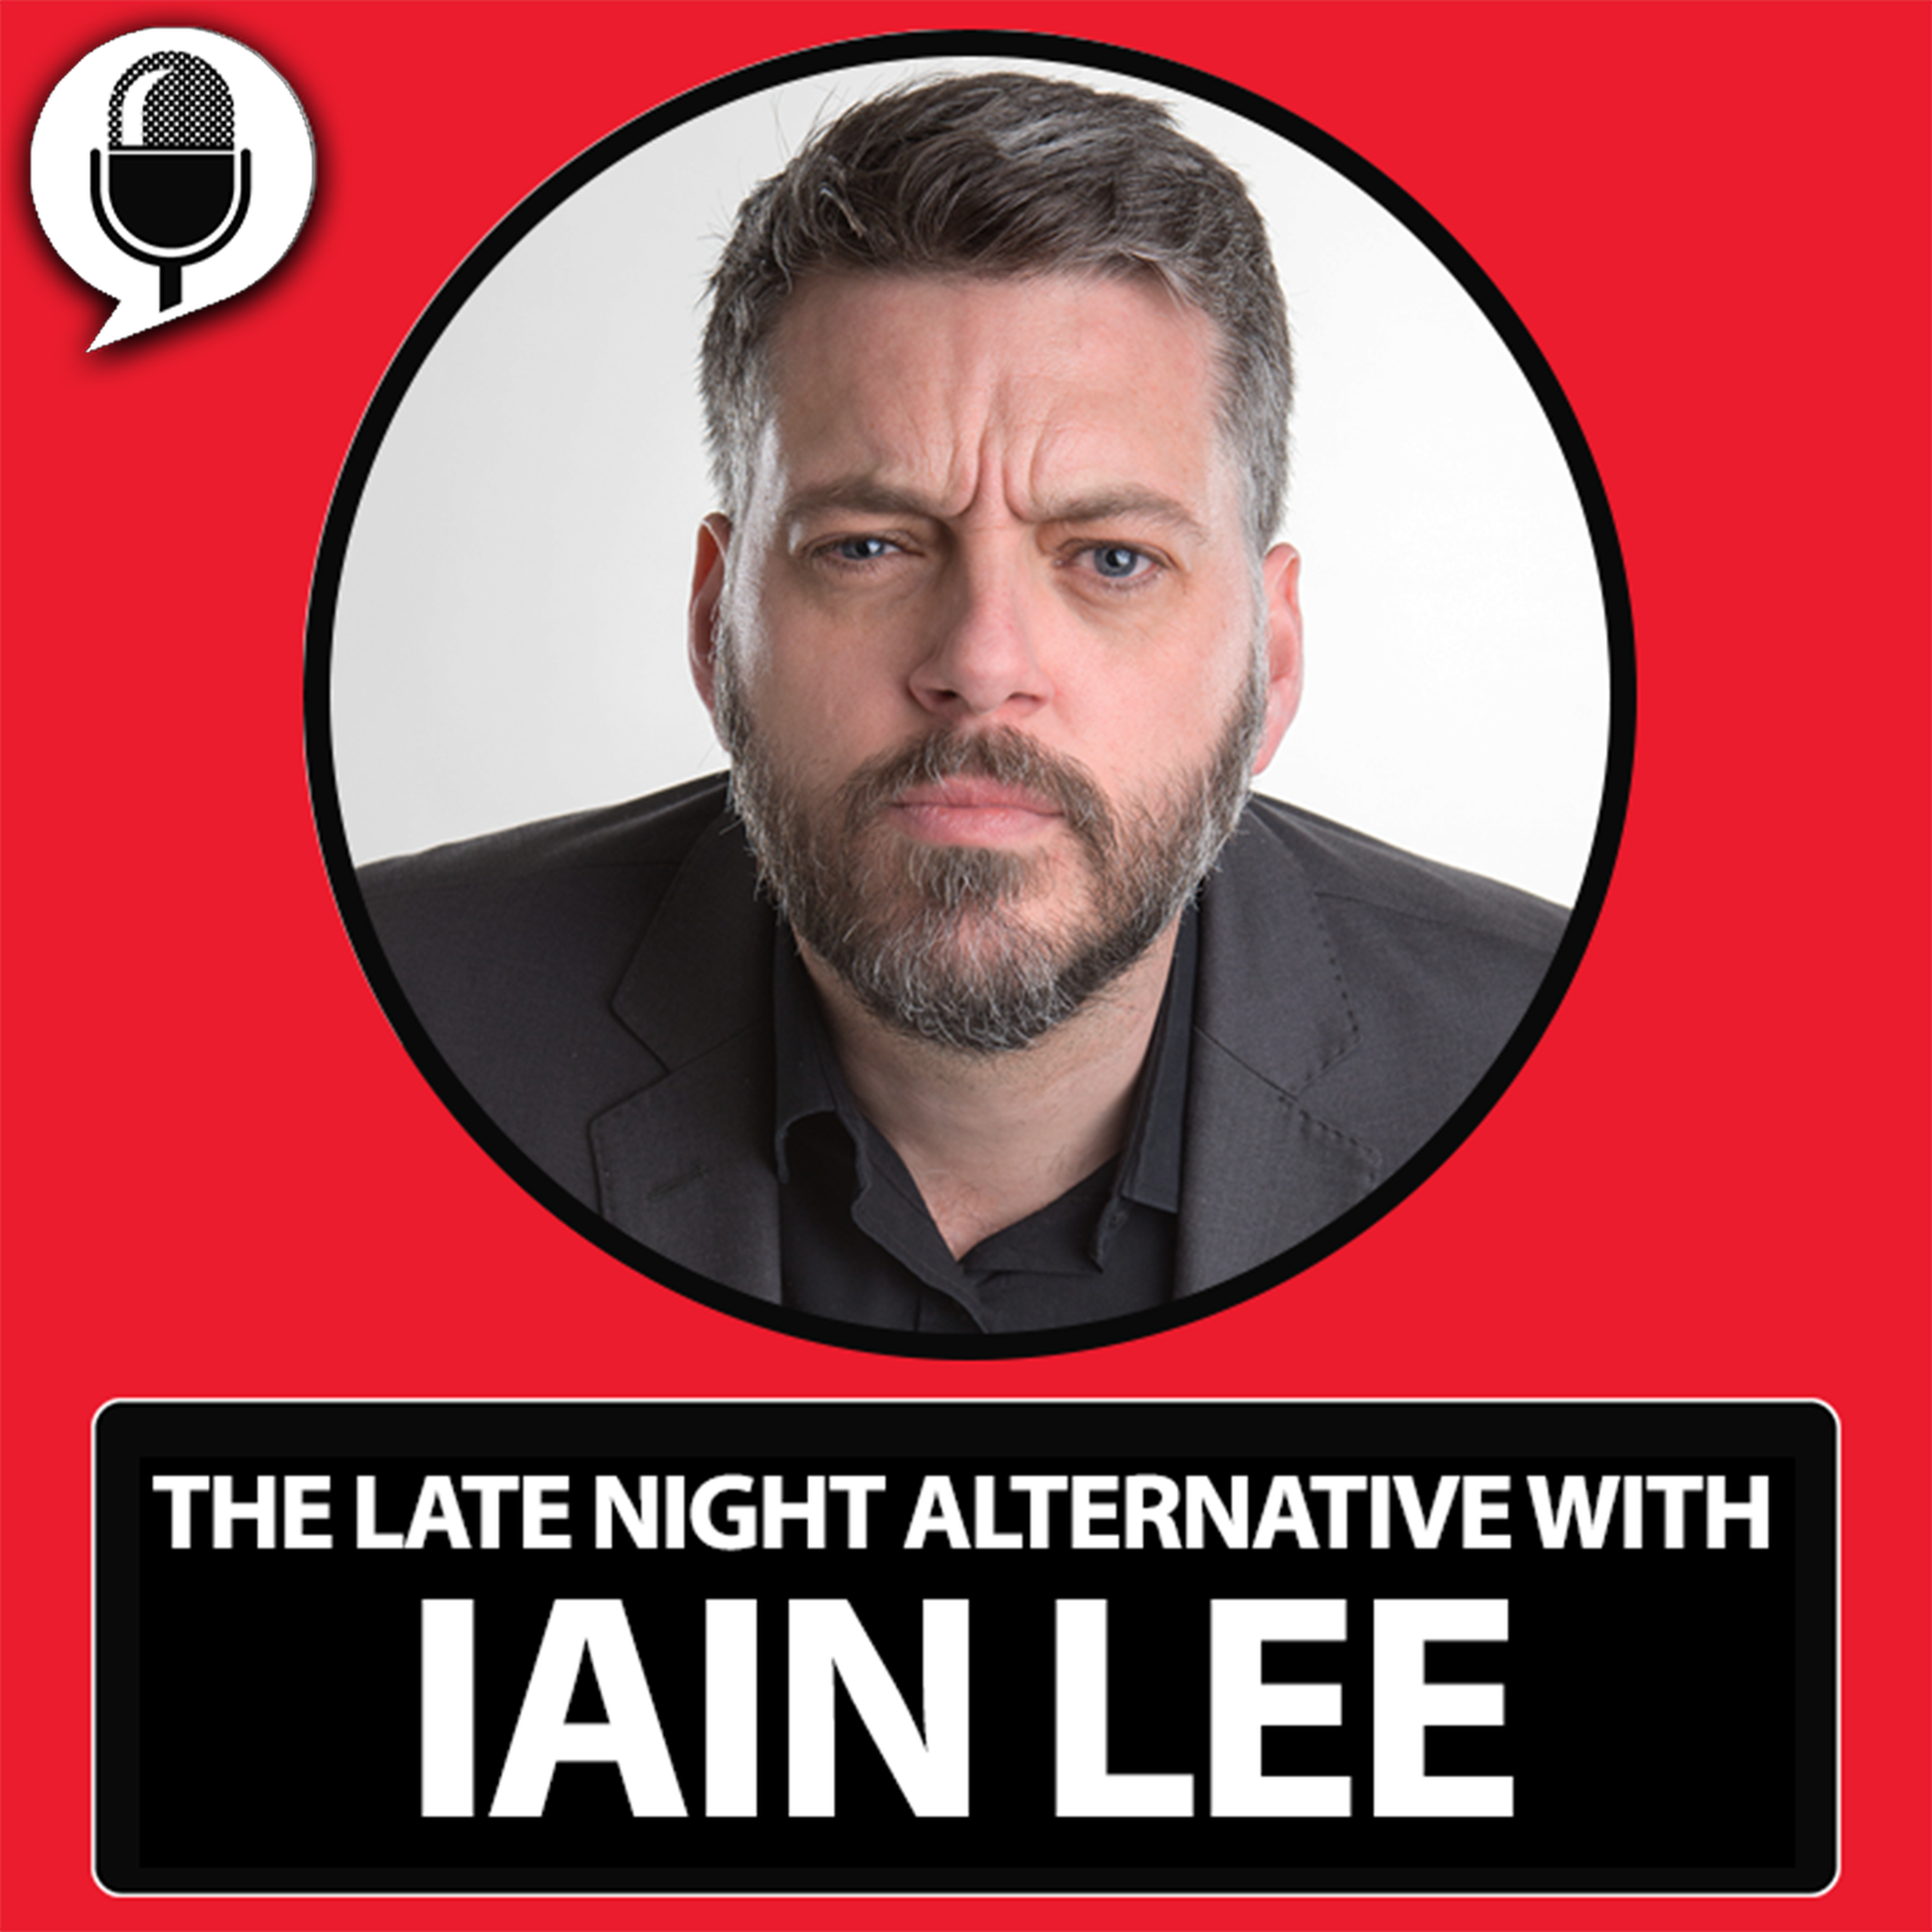 The Late Night Alternative with Katherine Boyle: Kai - Thursday, February 20 (Warning: Upsetting Content)